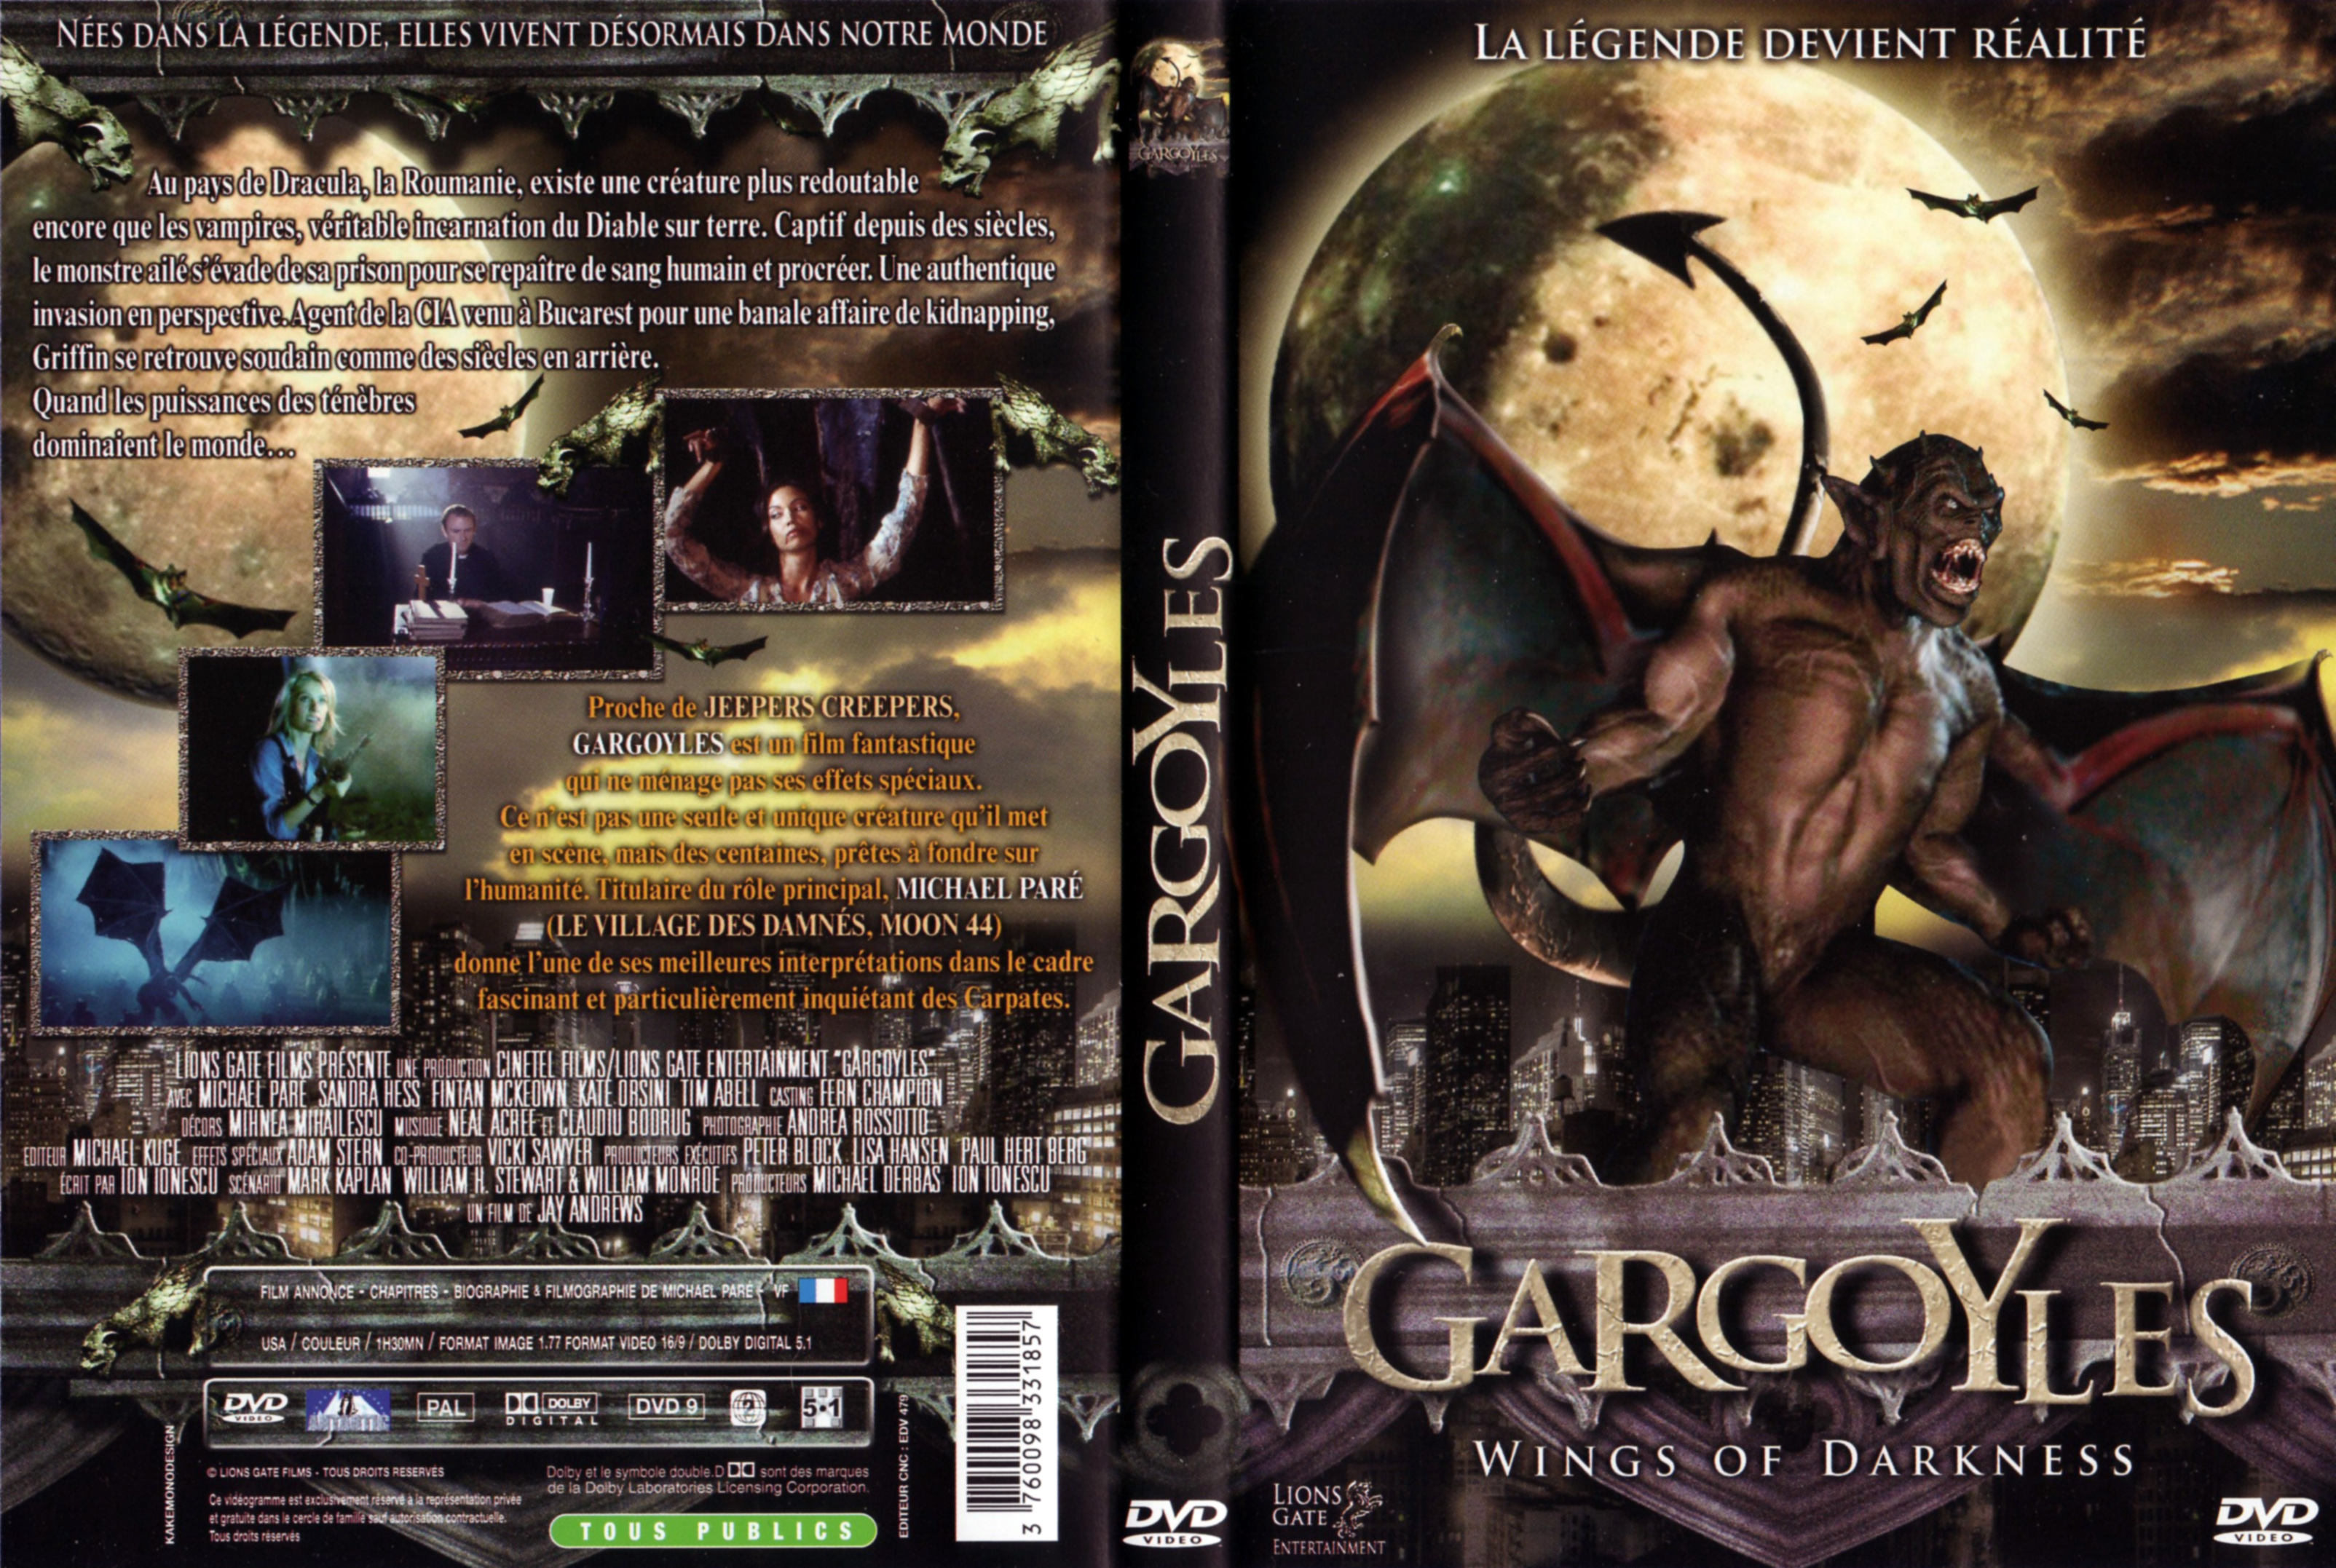 Jaquette DVD Gargoyles v3